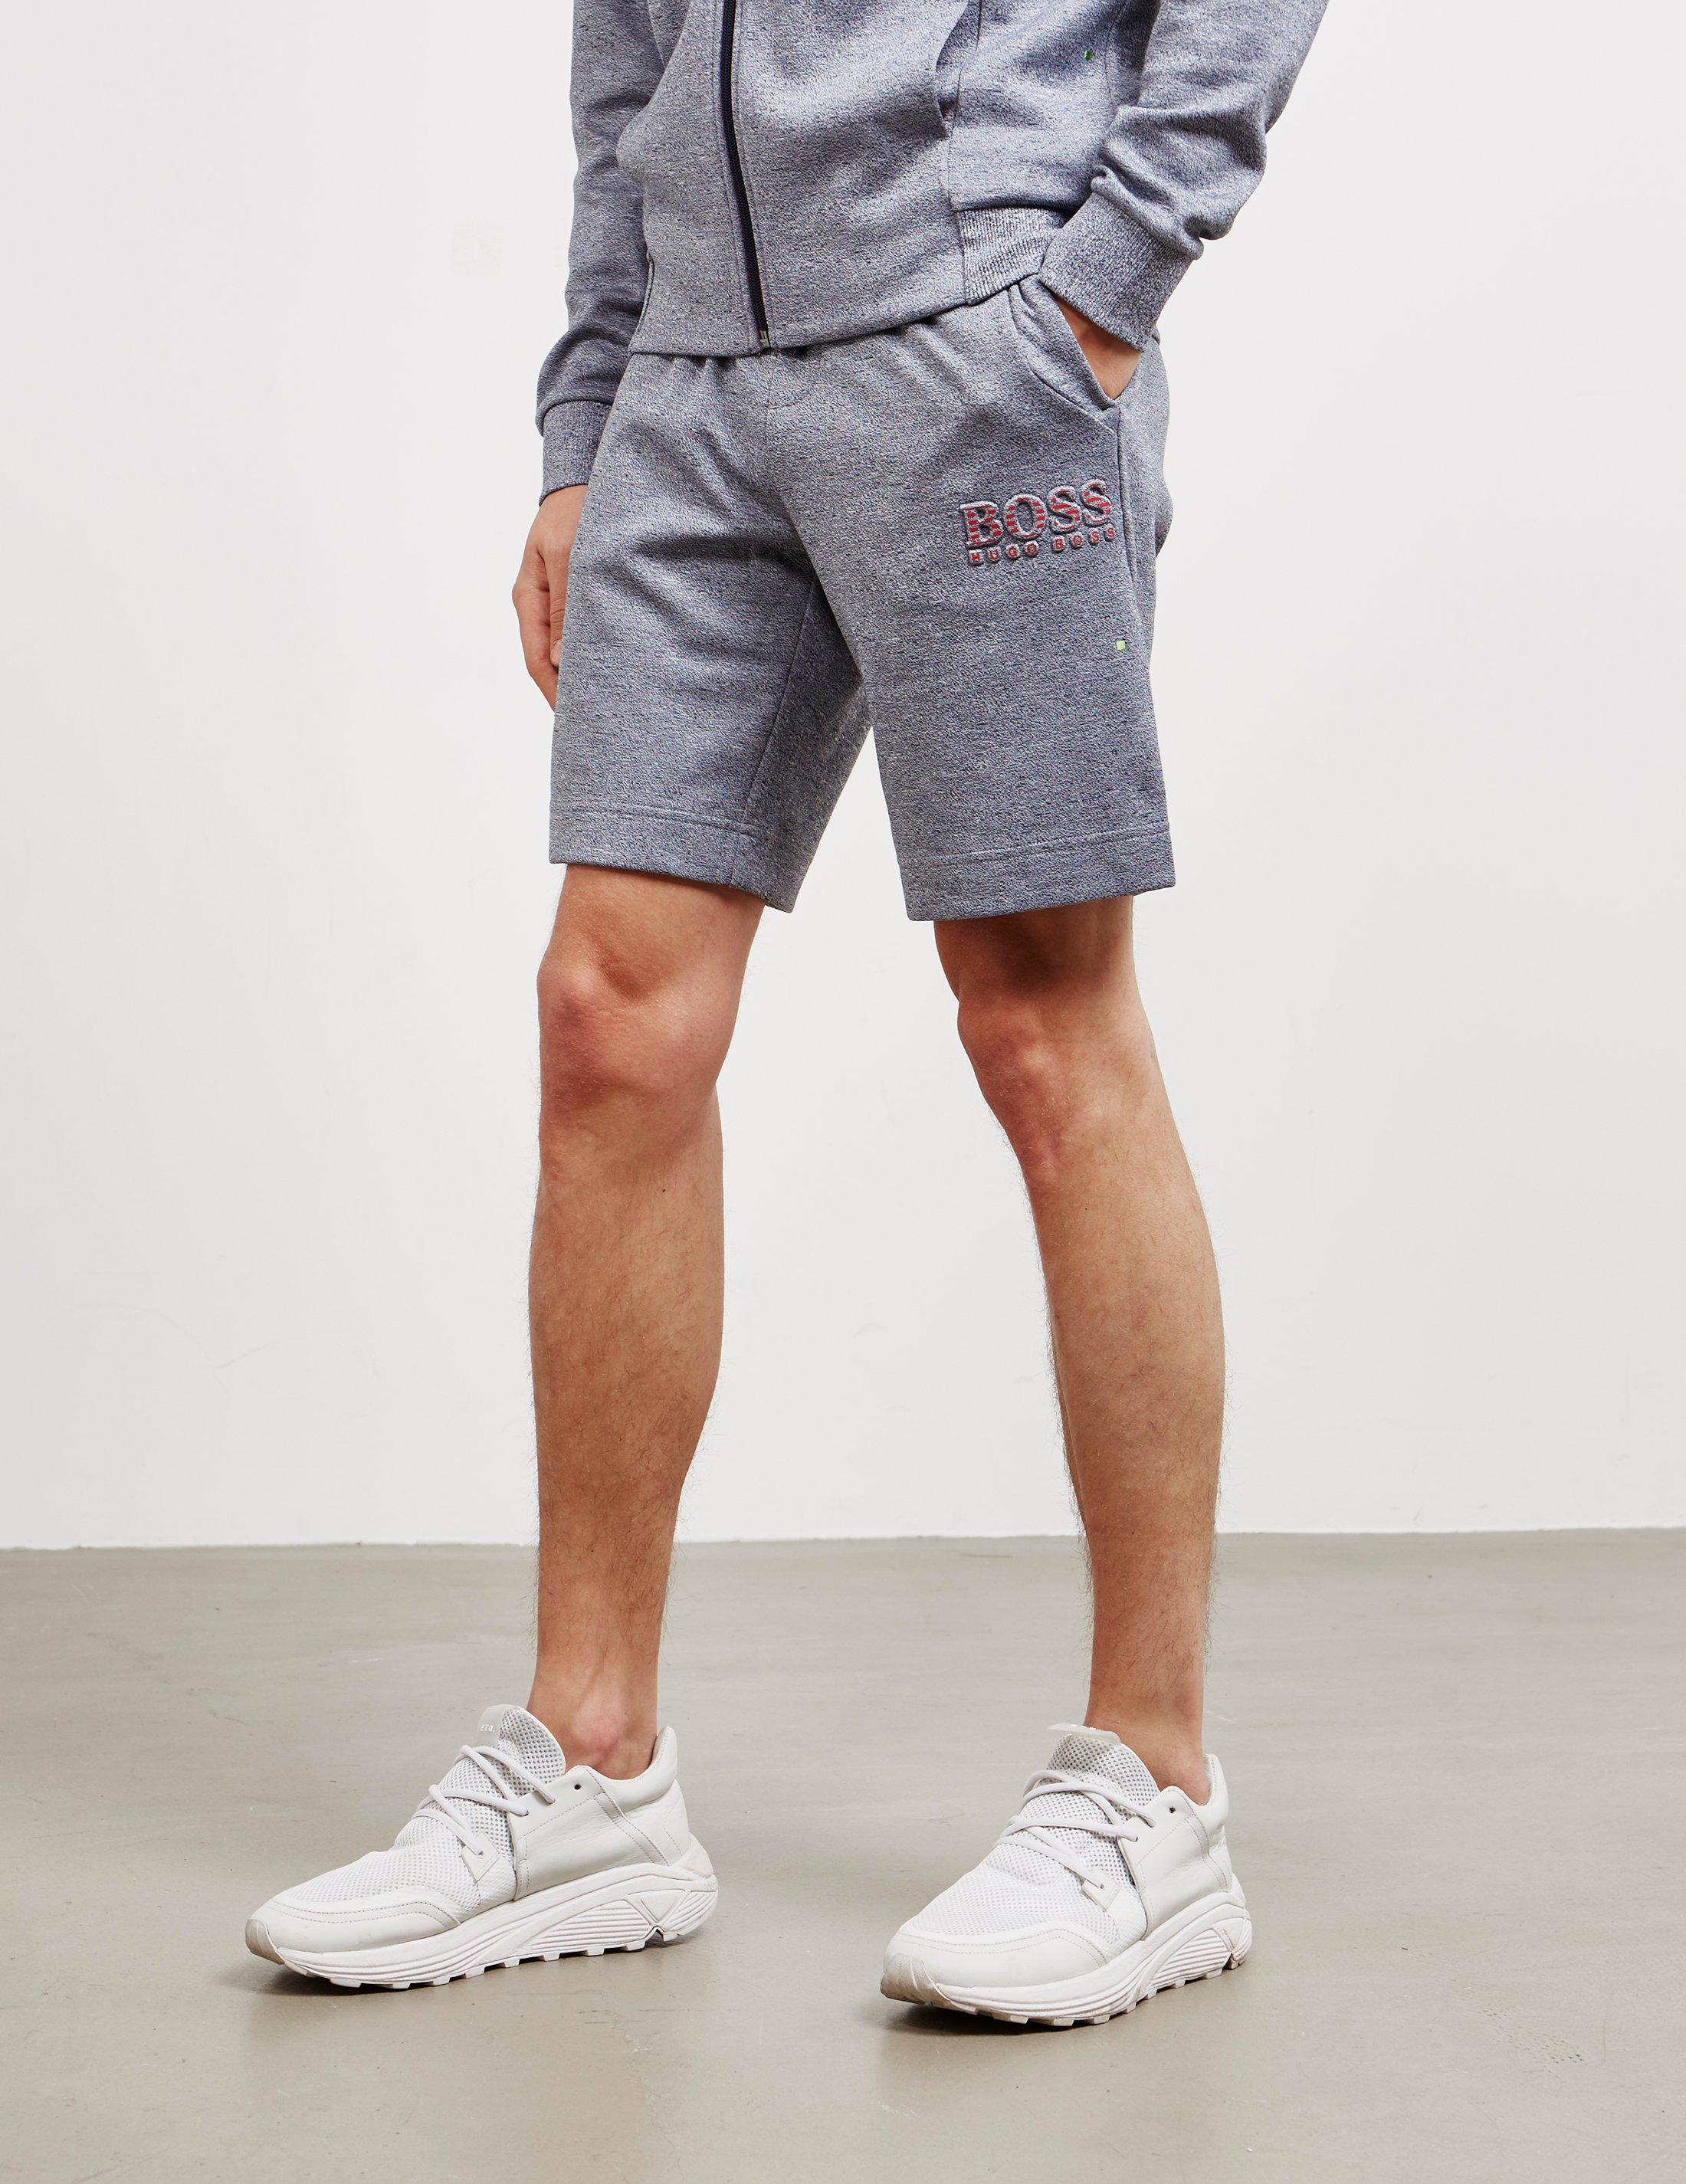 BOSS by Hugo Boss Fleece Shorts Grey in 